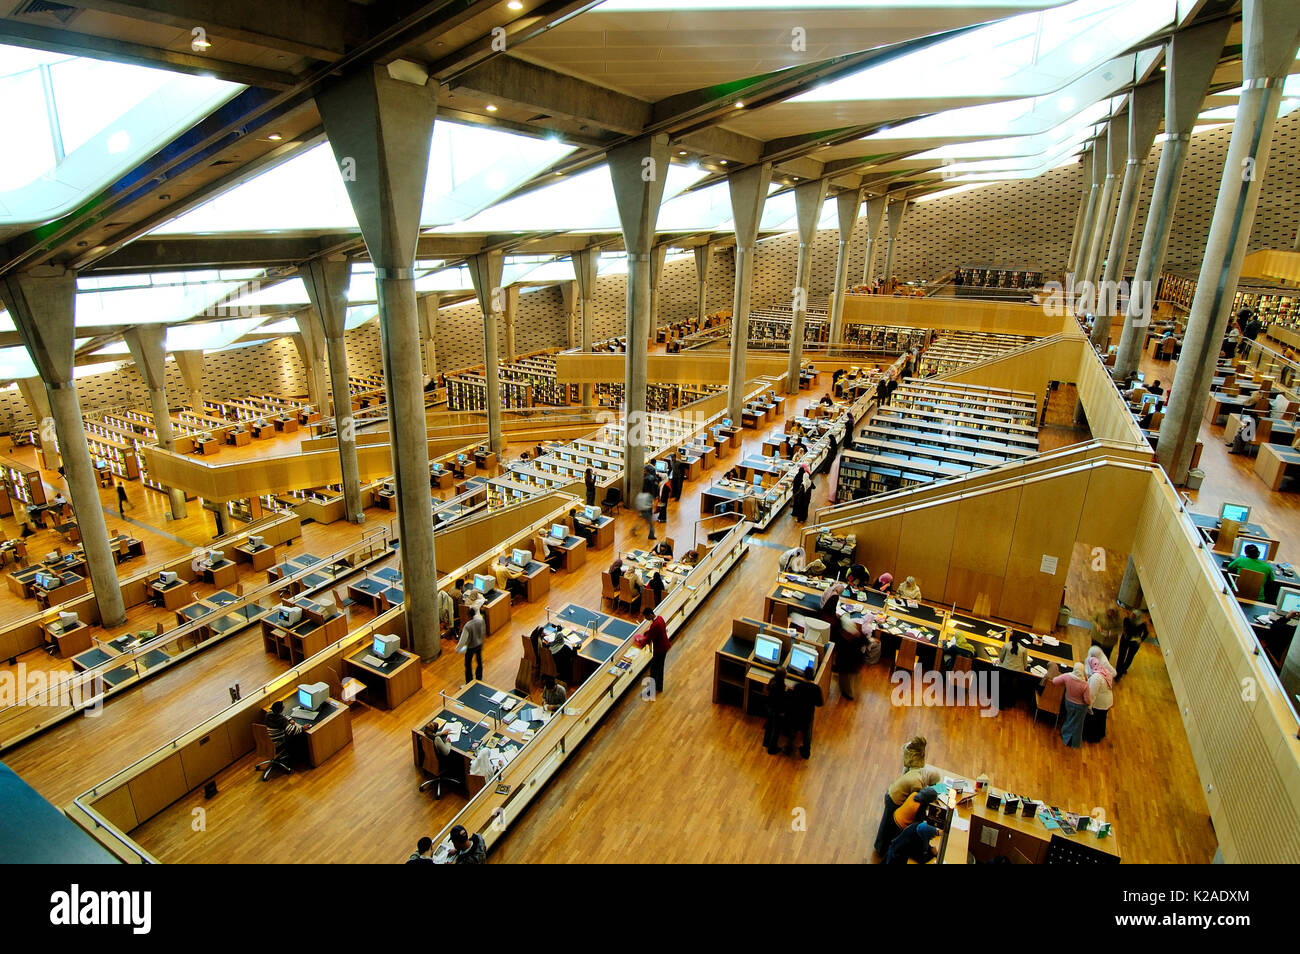 La Biblioteca Alexandrina (Biblioteca di Alessandria) è stato completato nel 2002. Sorge vicino all'originale grande biblioteca di Alessandria. Egitto Foto Stock